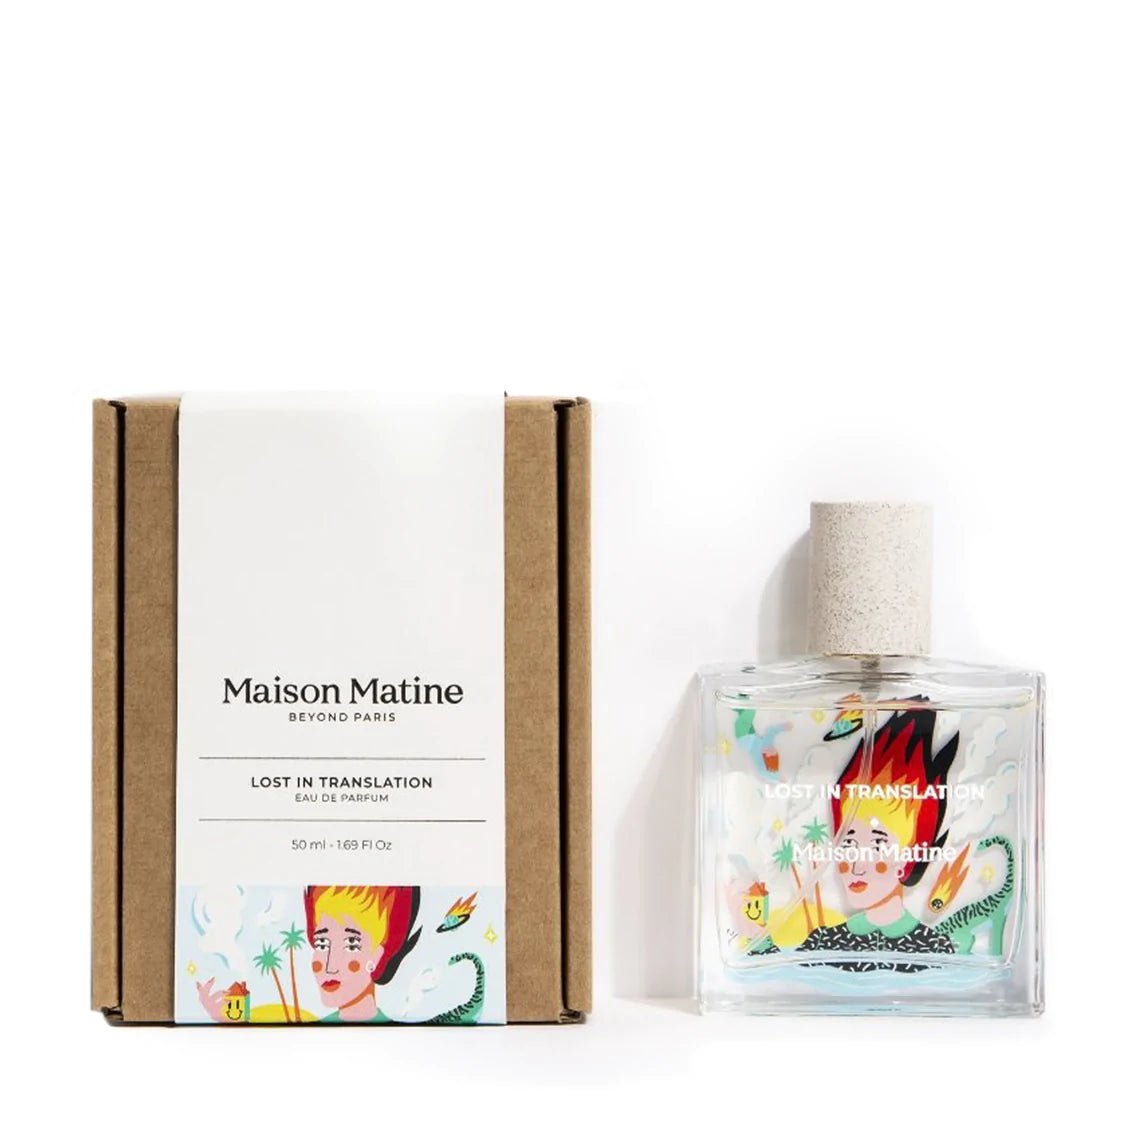 Maison Matine Lost in Translation Eau de Parfum - 50ml - The Sensory